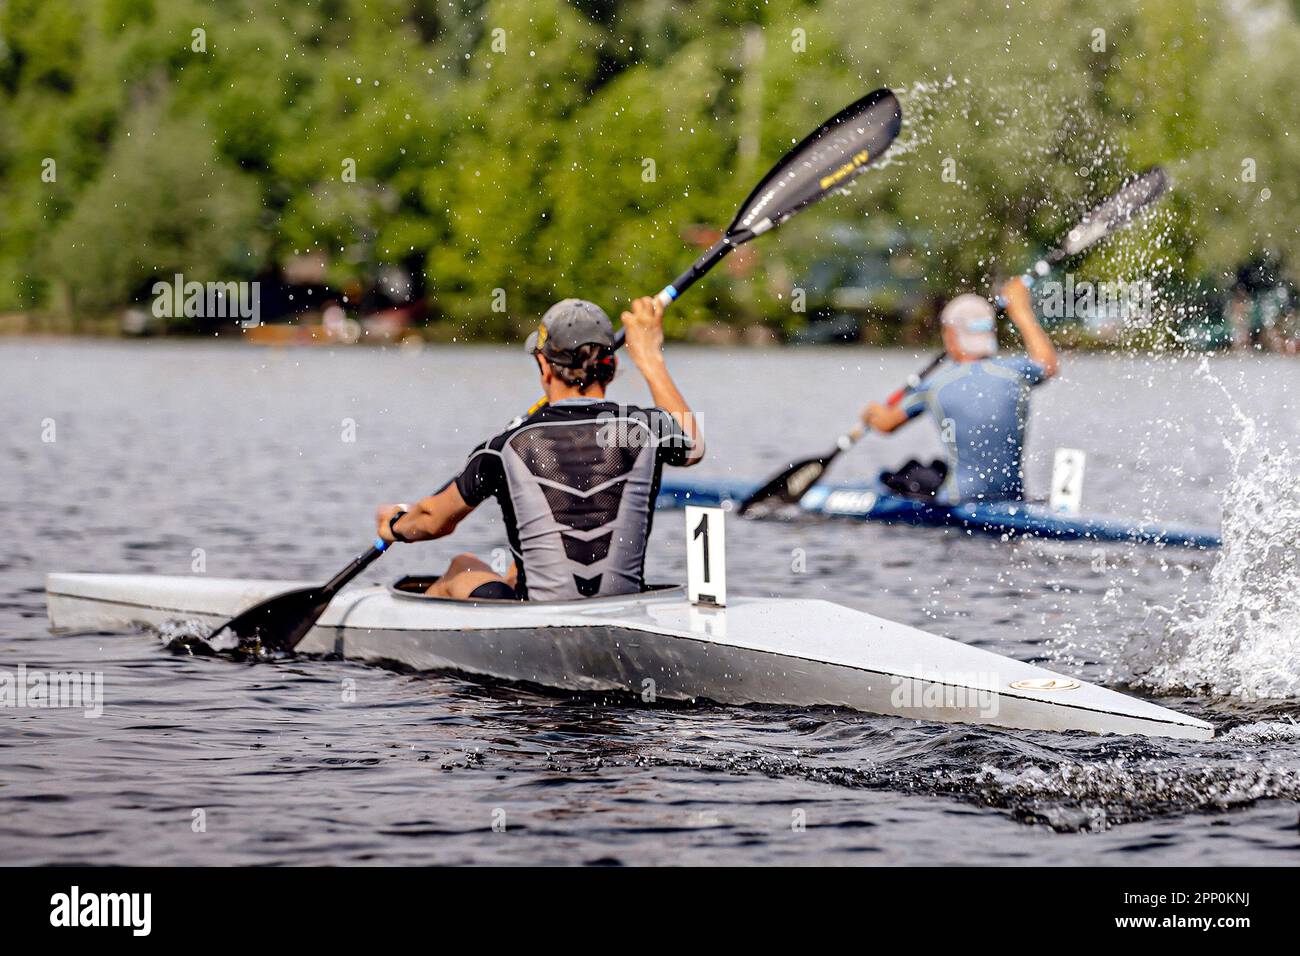 two male athlete kayaker on kayak single rowing kayaking championship race, sports summer games Stock Photo